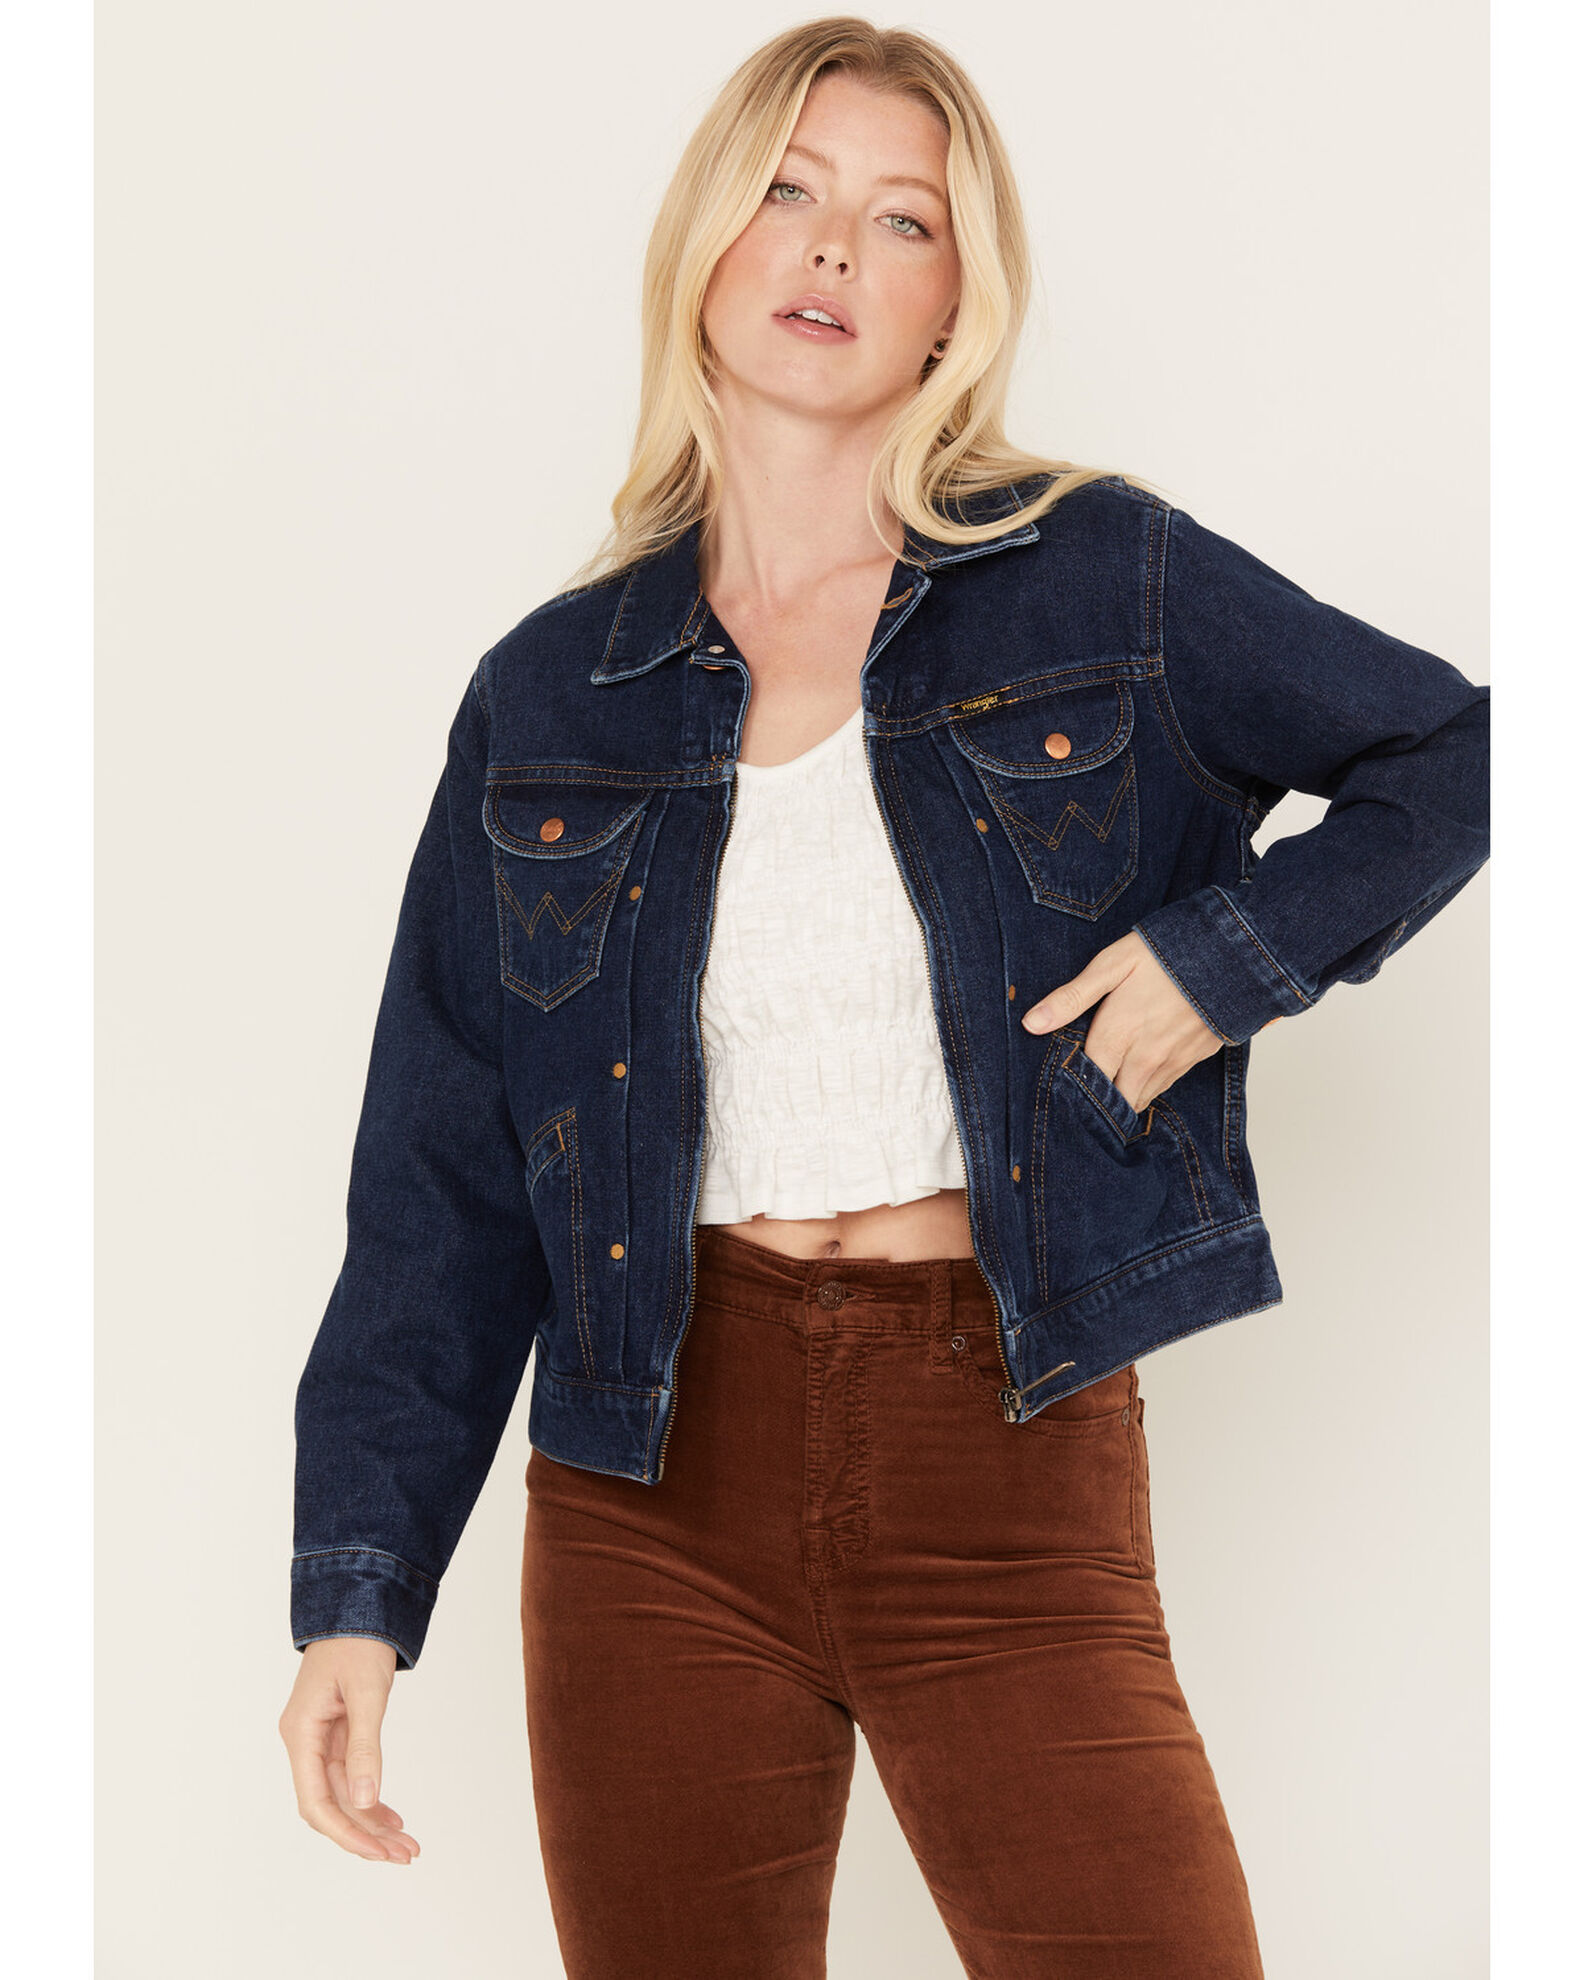  RMXEi Flannel Jackets For Women,Jackets For Women Jean